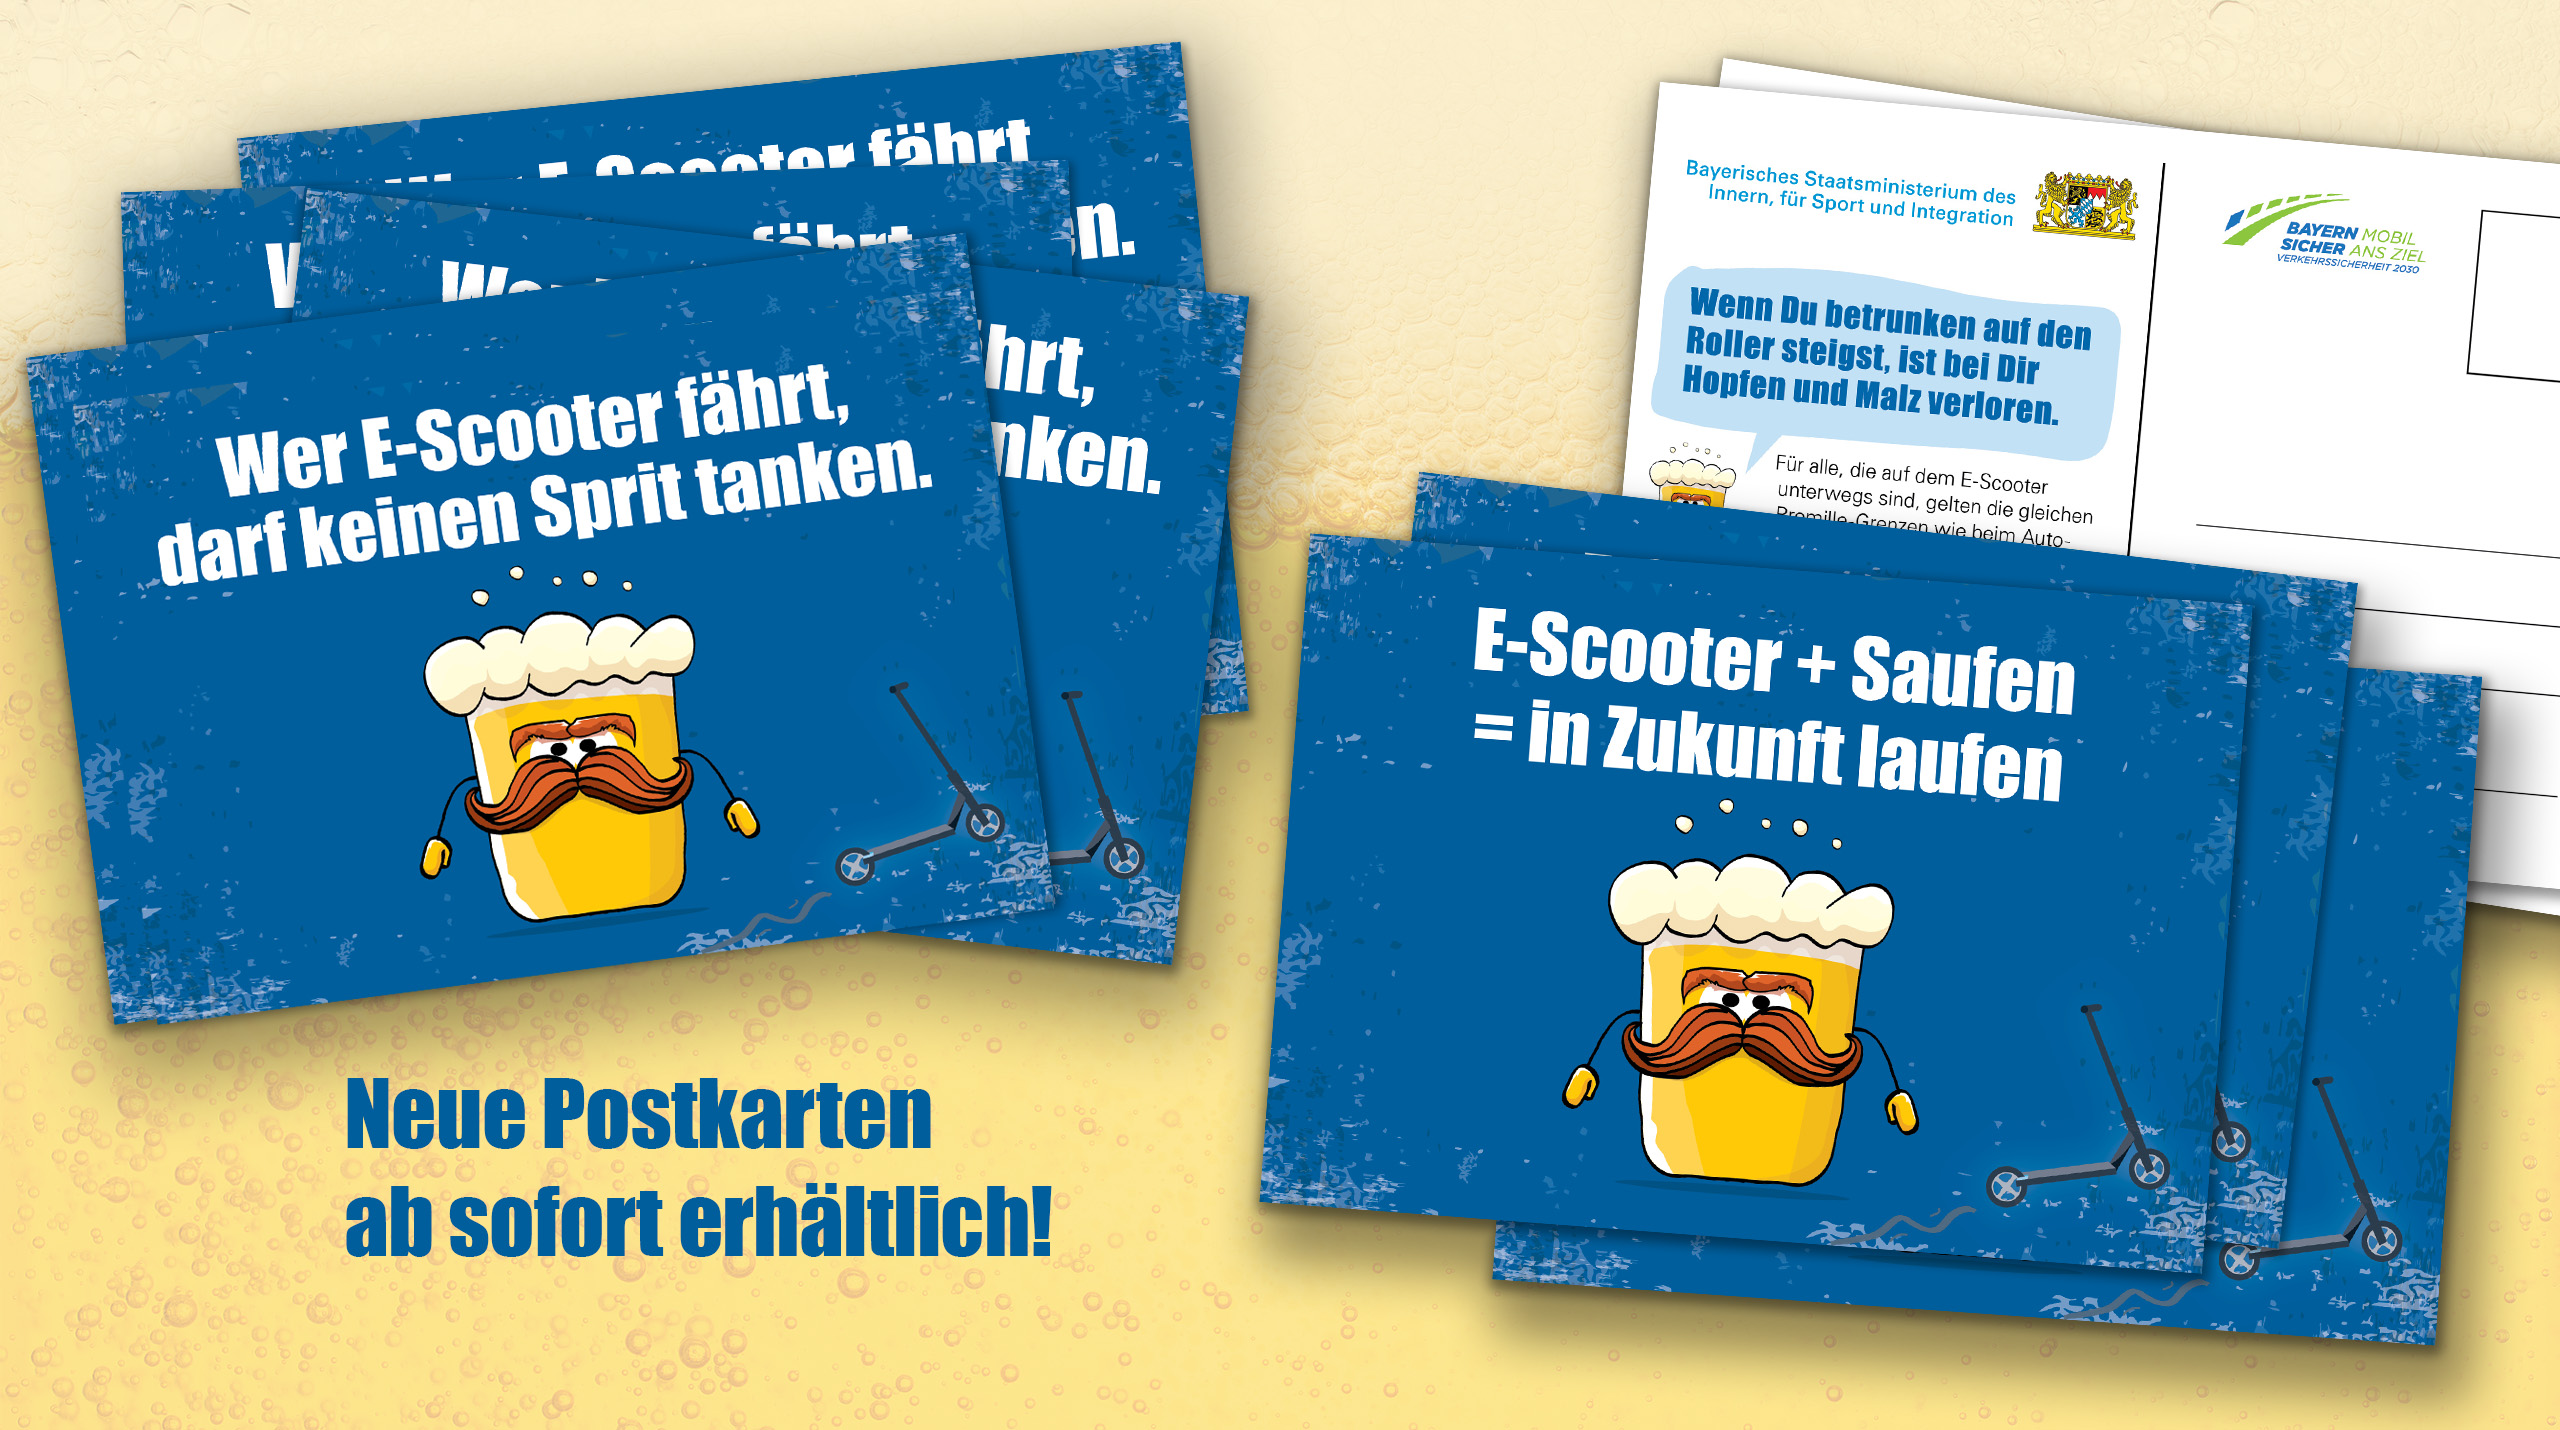 Neue Postkarten ab sofort erhältlich: "Wer E-Scooter fährt, darf keinen Sprit tanken." / "E-Scooter + Saufen = in Zukunft laufen"